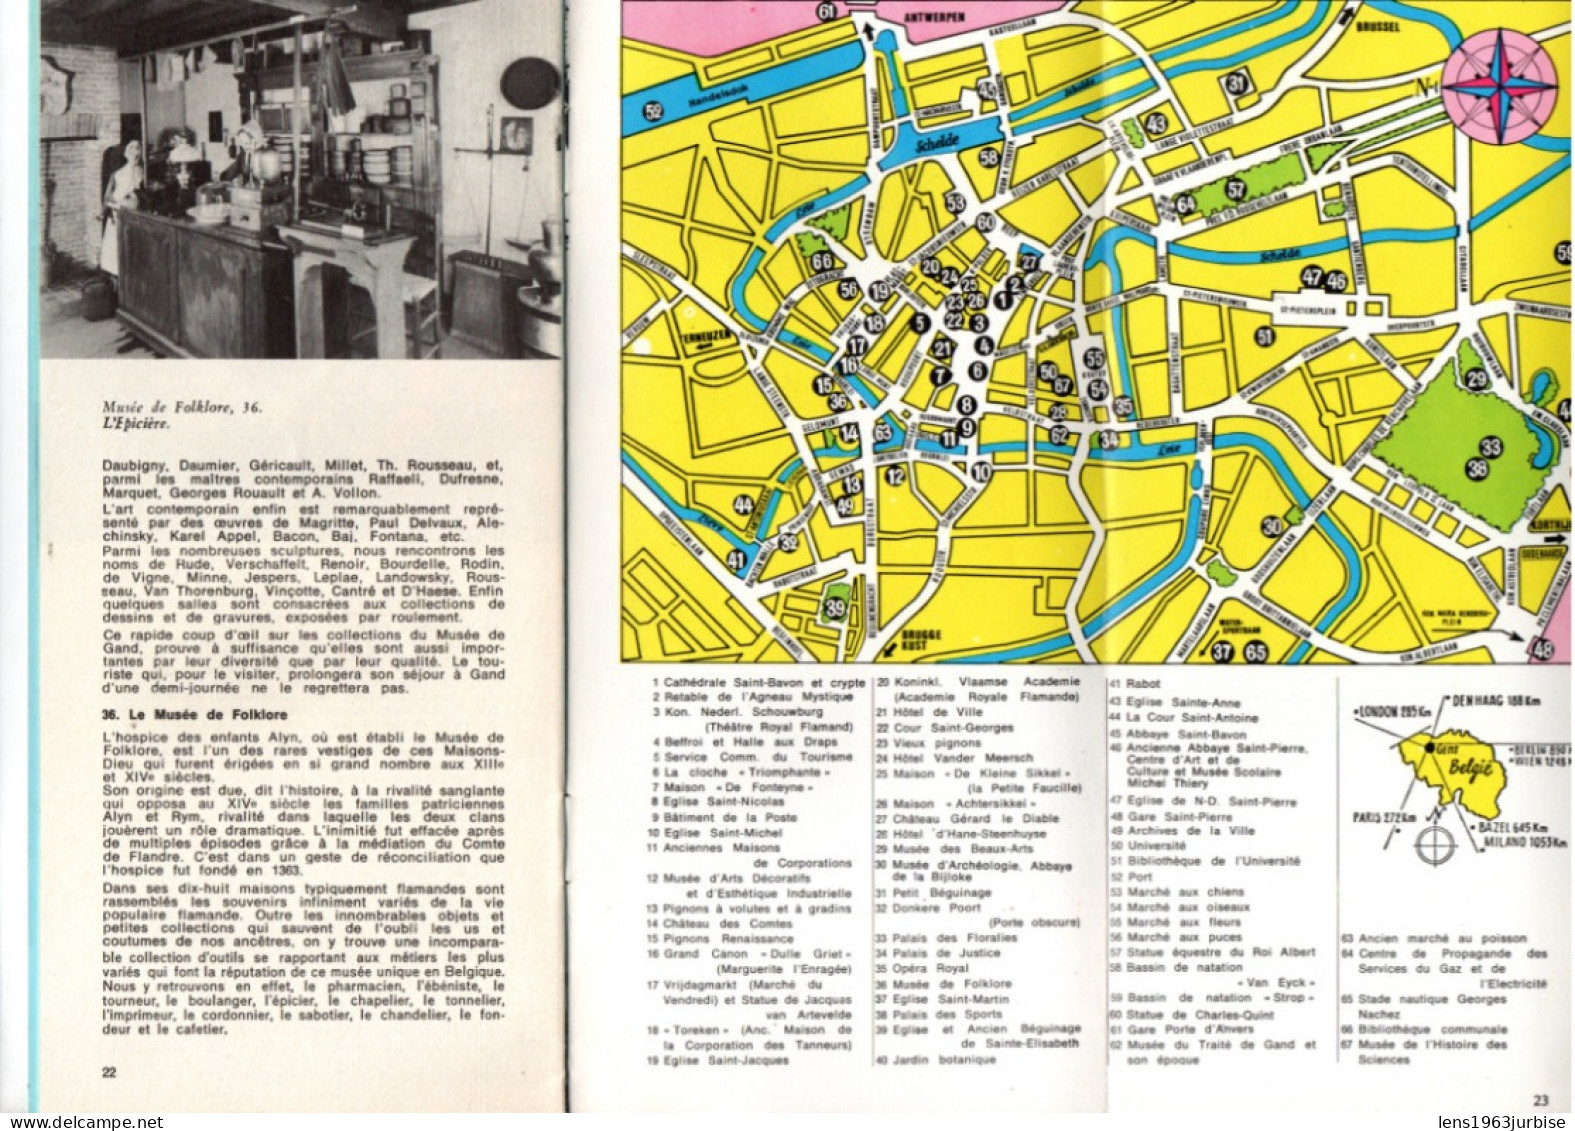 Gand , Gent , Ville Des Fleurs ( 1972 ) - Dépliants Touristiques